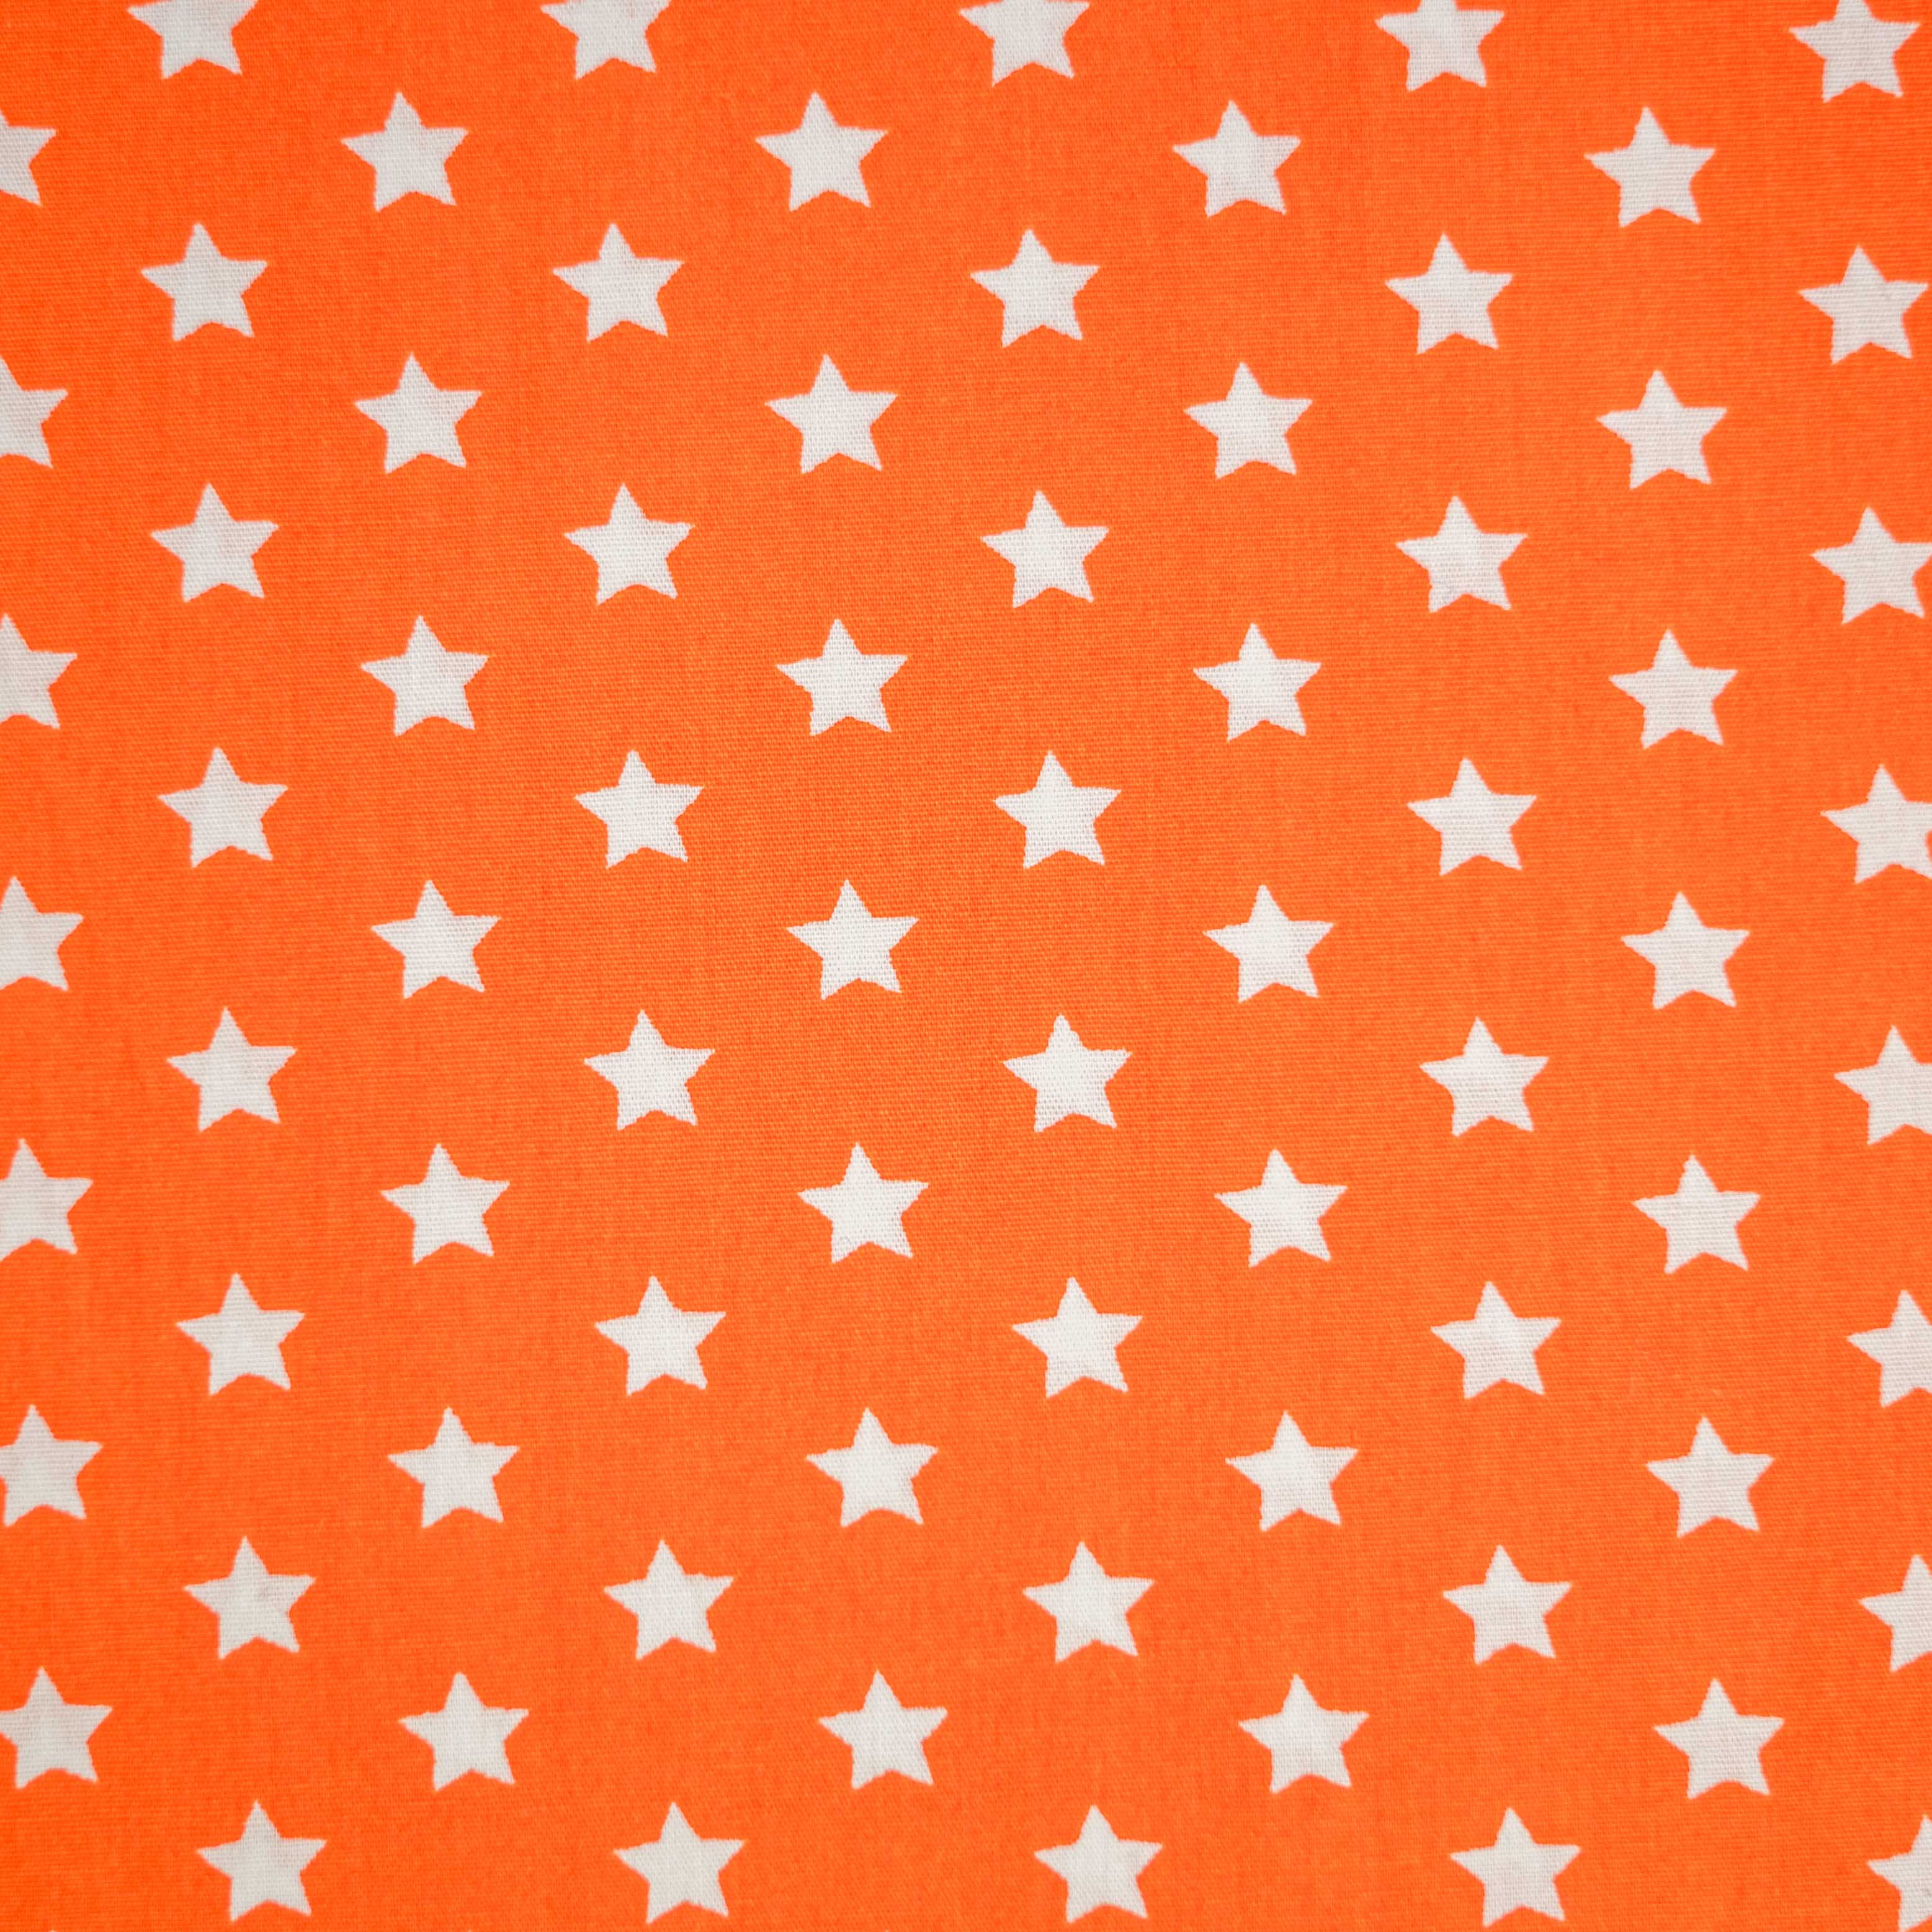 Baumwollstoff Sternen auf orange